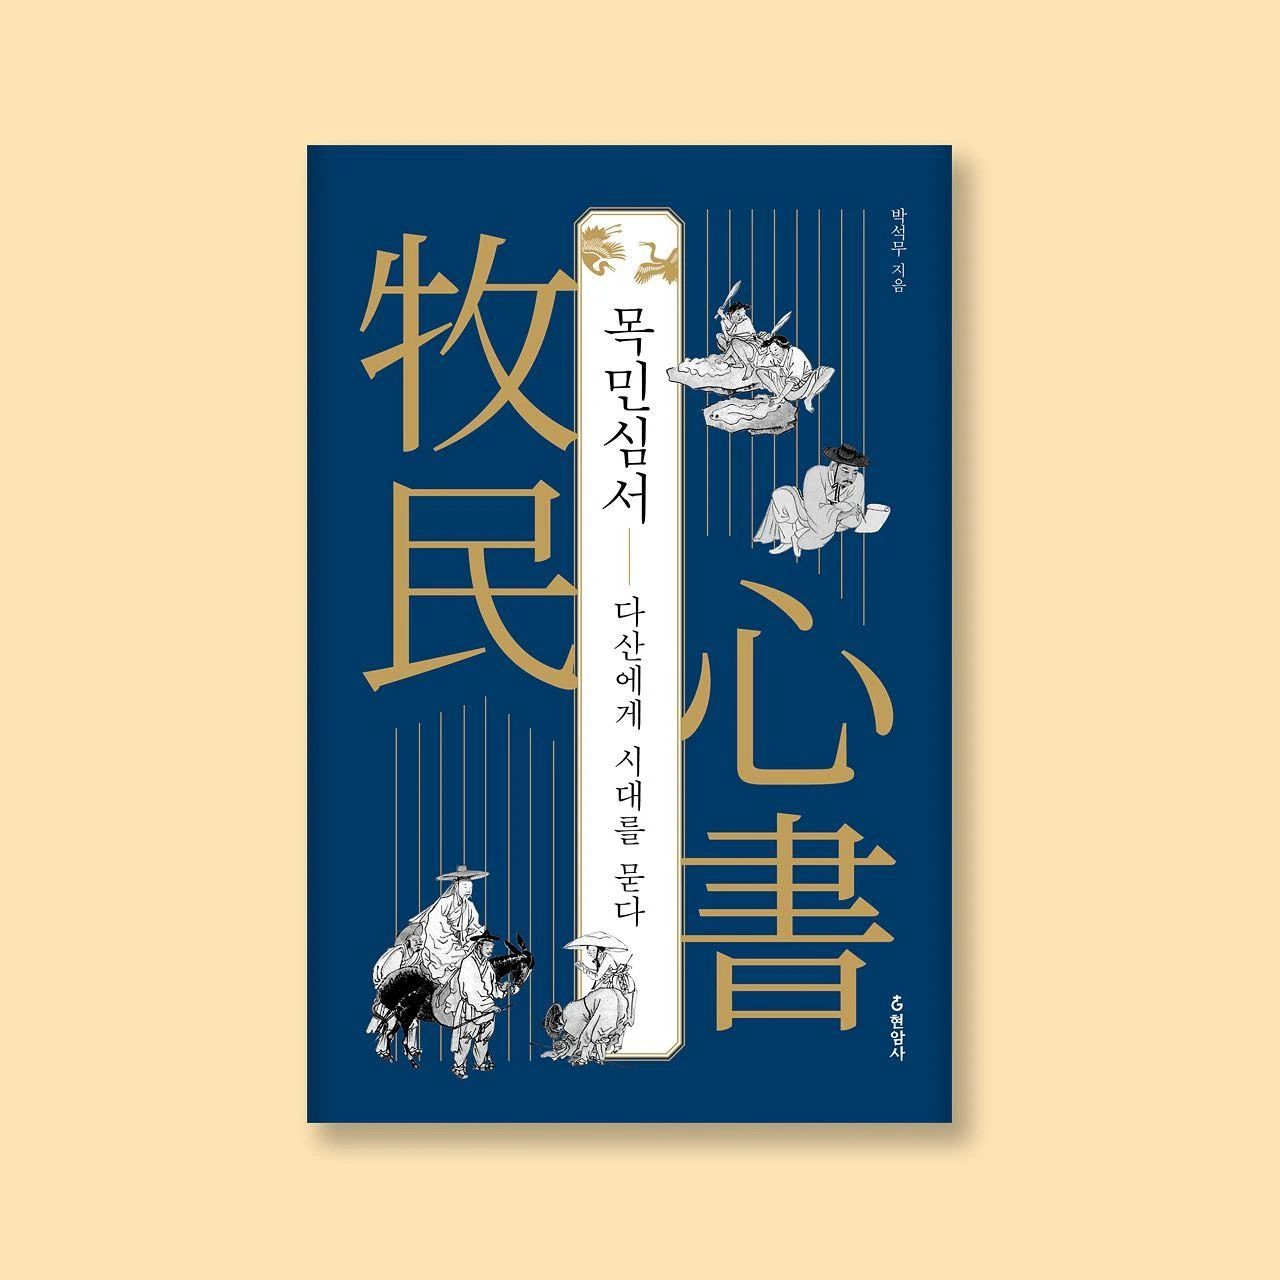 充满灵感的韩国书籍封面设计作品。